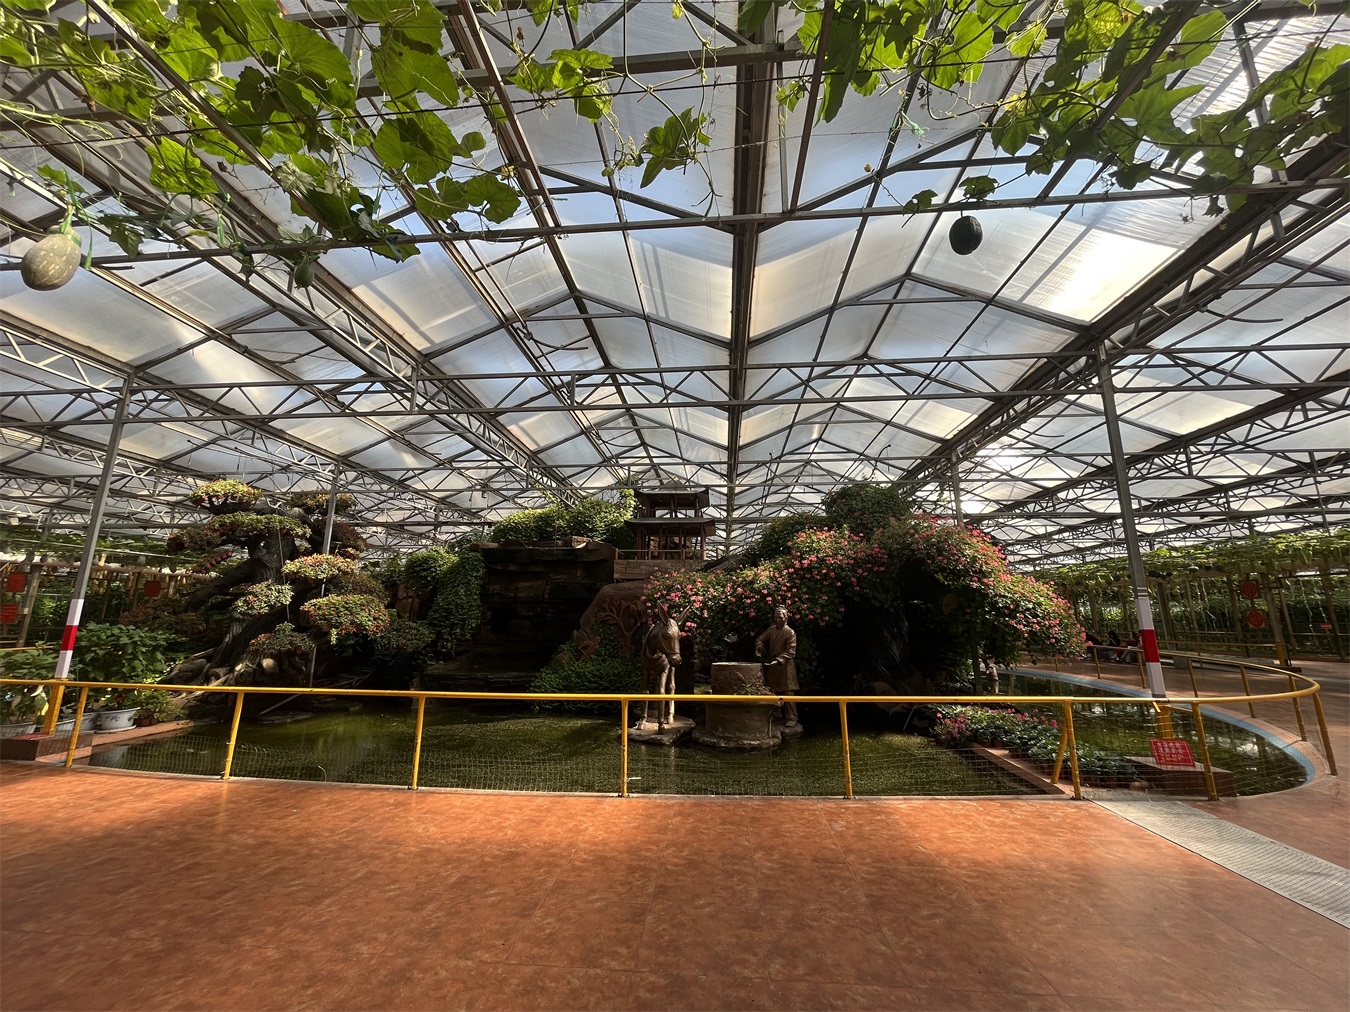 阳光板温室承建智能温室花卉蔬菜育苗种植生态园图片